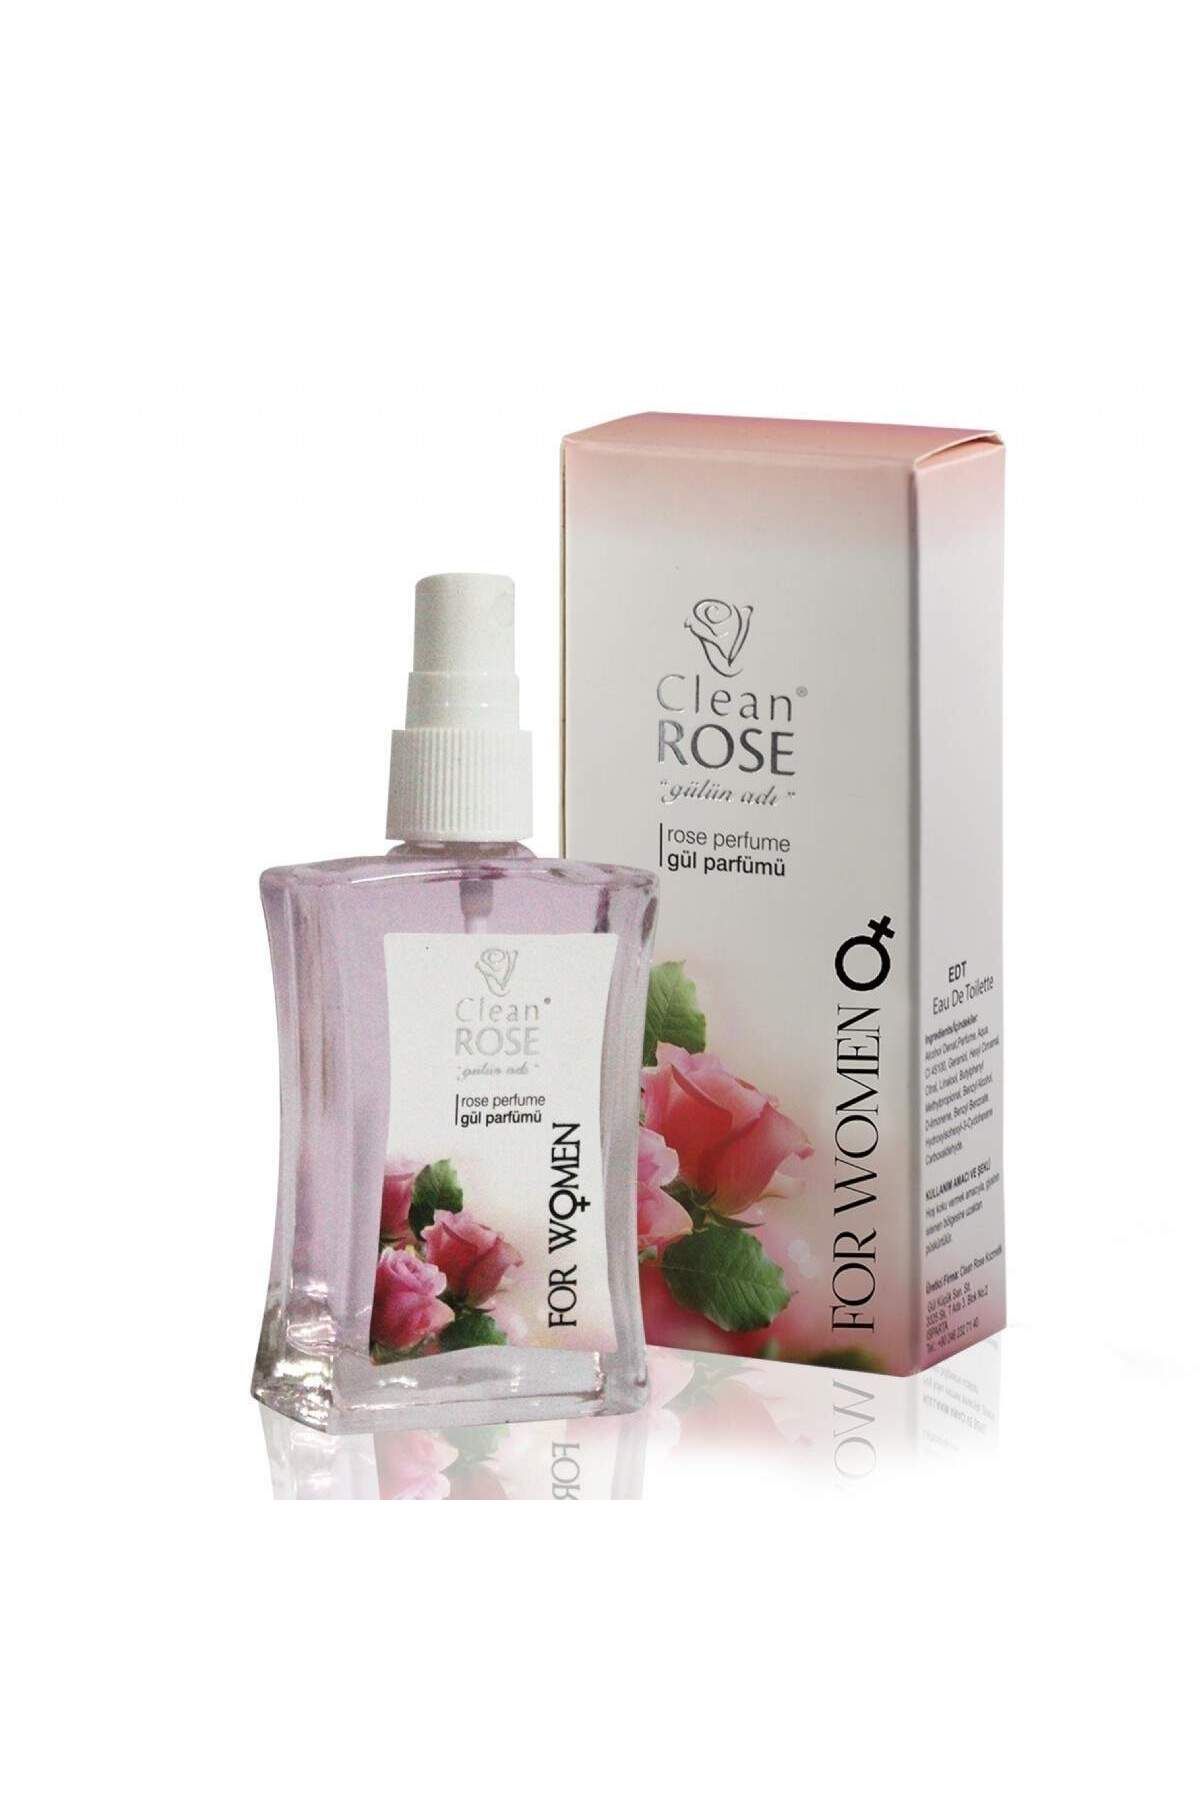 Clean Rose Kadın Gül Parfümü